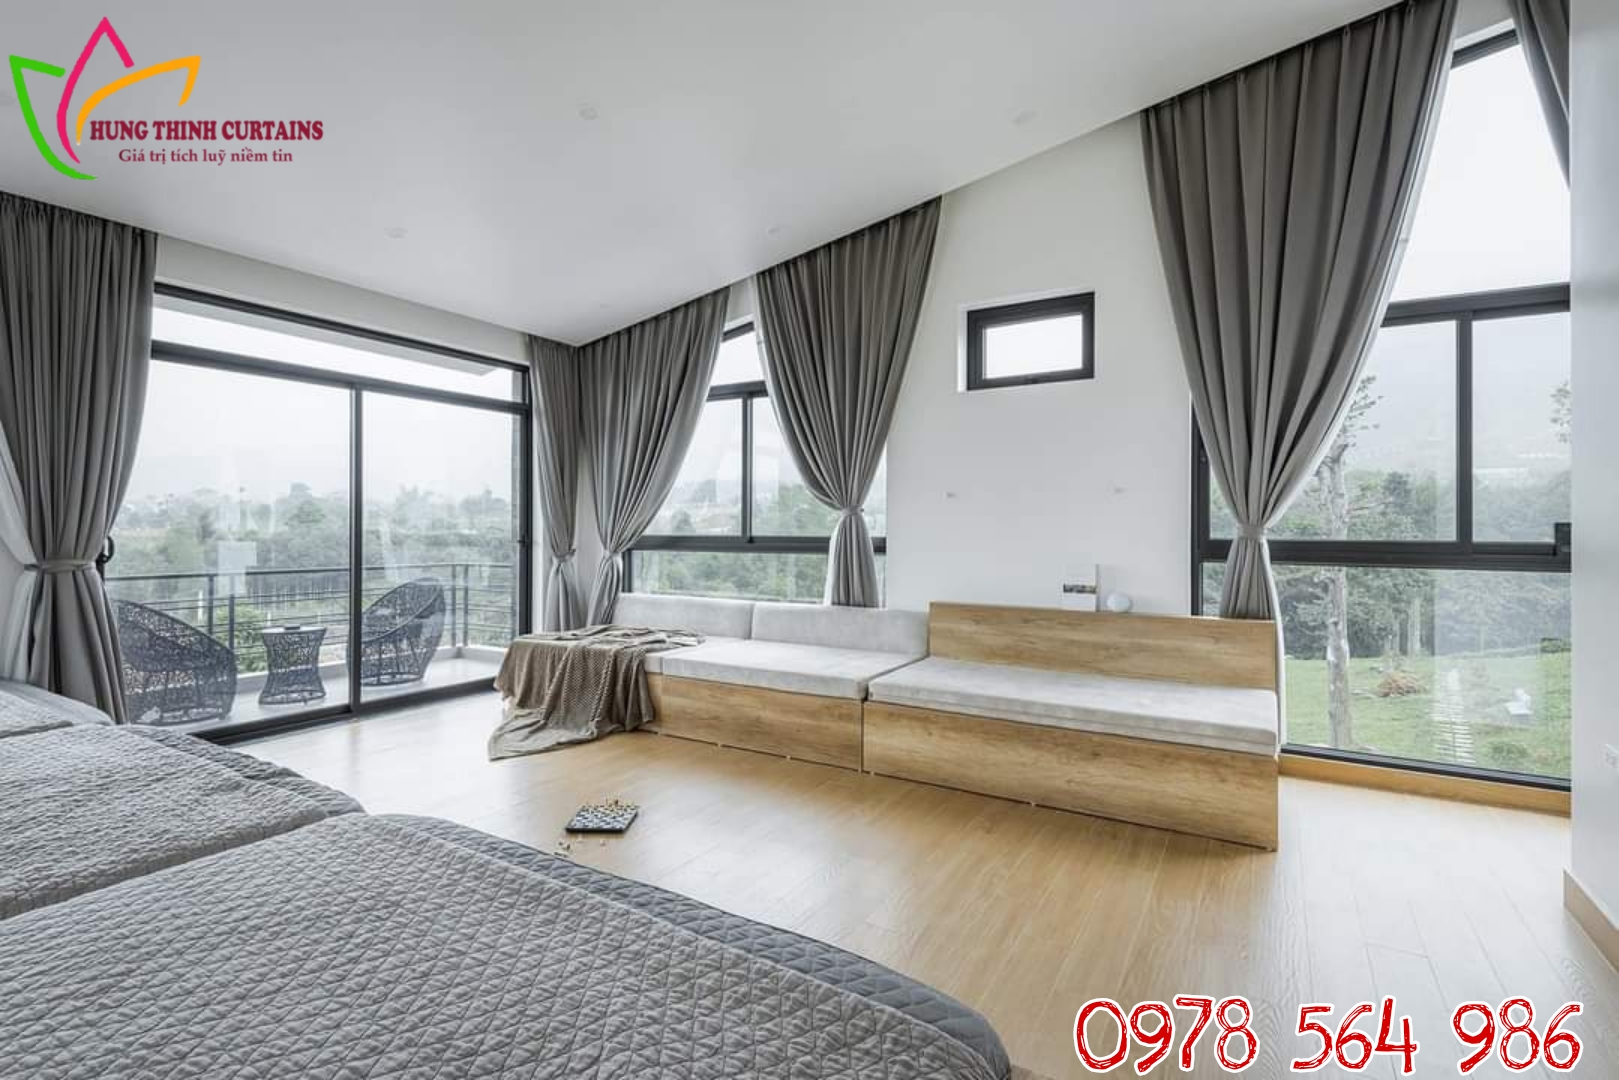 Lựa chọn rèm cửa biệt thự tại TP Hạ Long - Quảng Ninh 0966463686